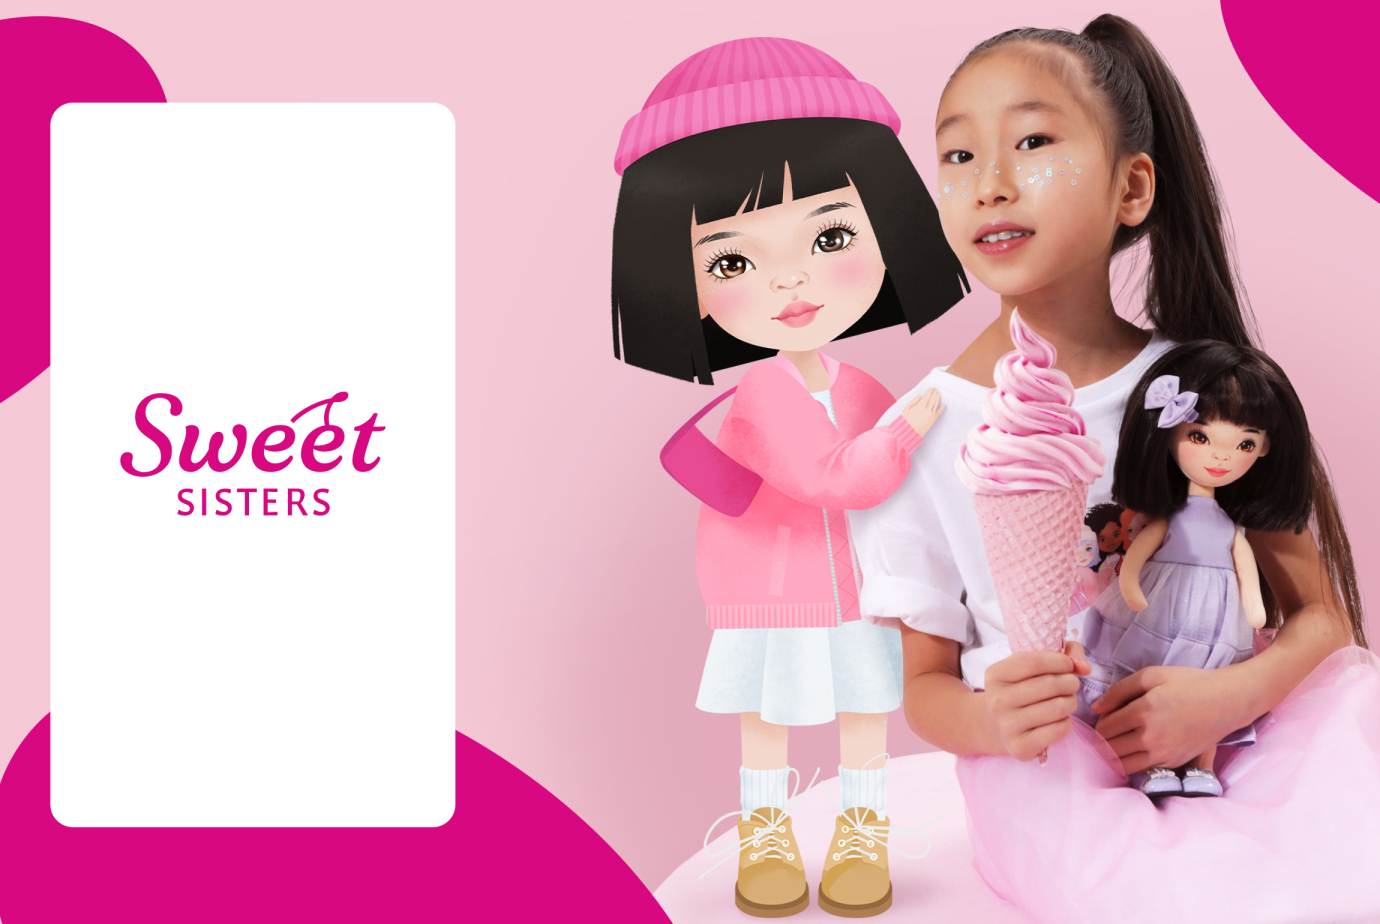 Создание авторских иллюстраций бренда кукол Sweet Sisters для компании Orange Toys